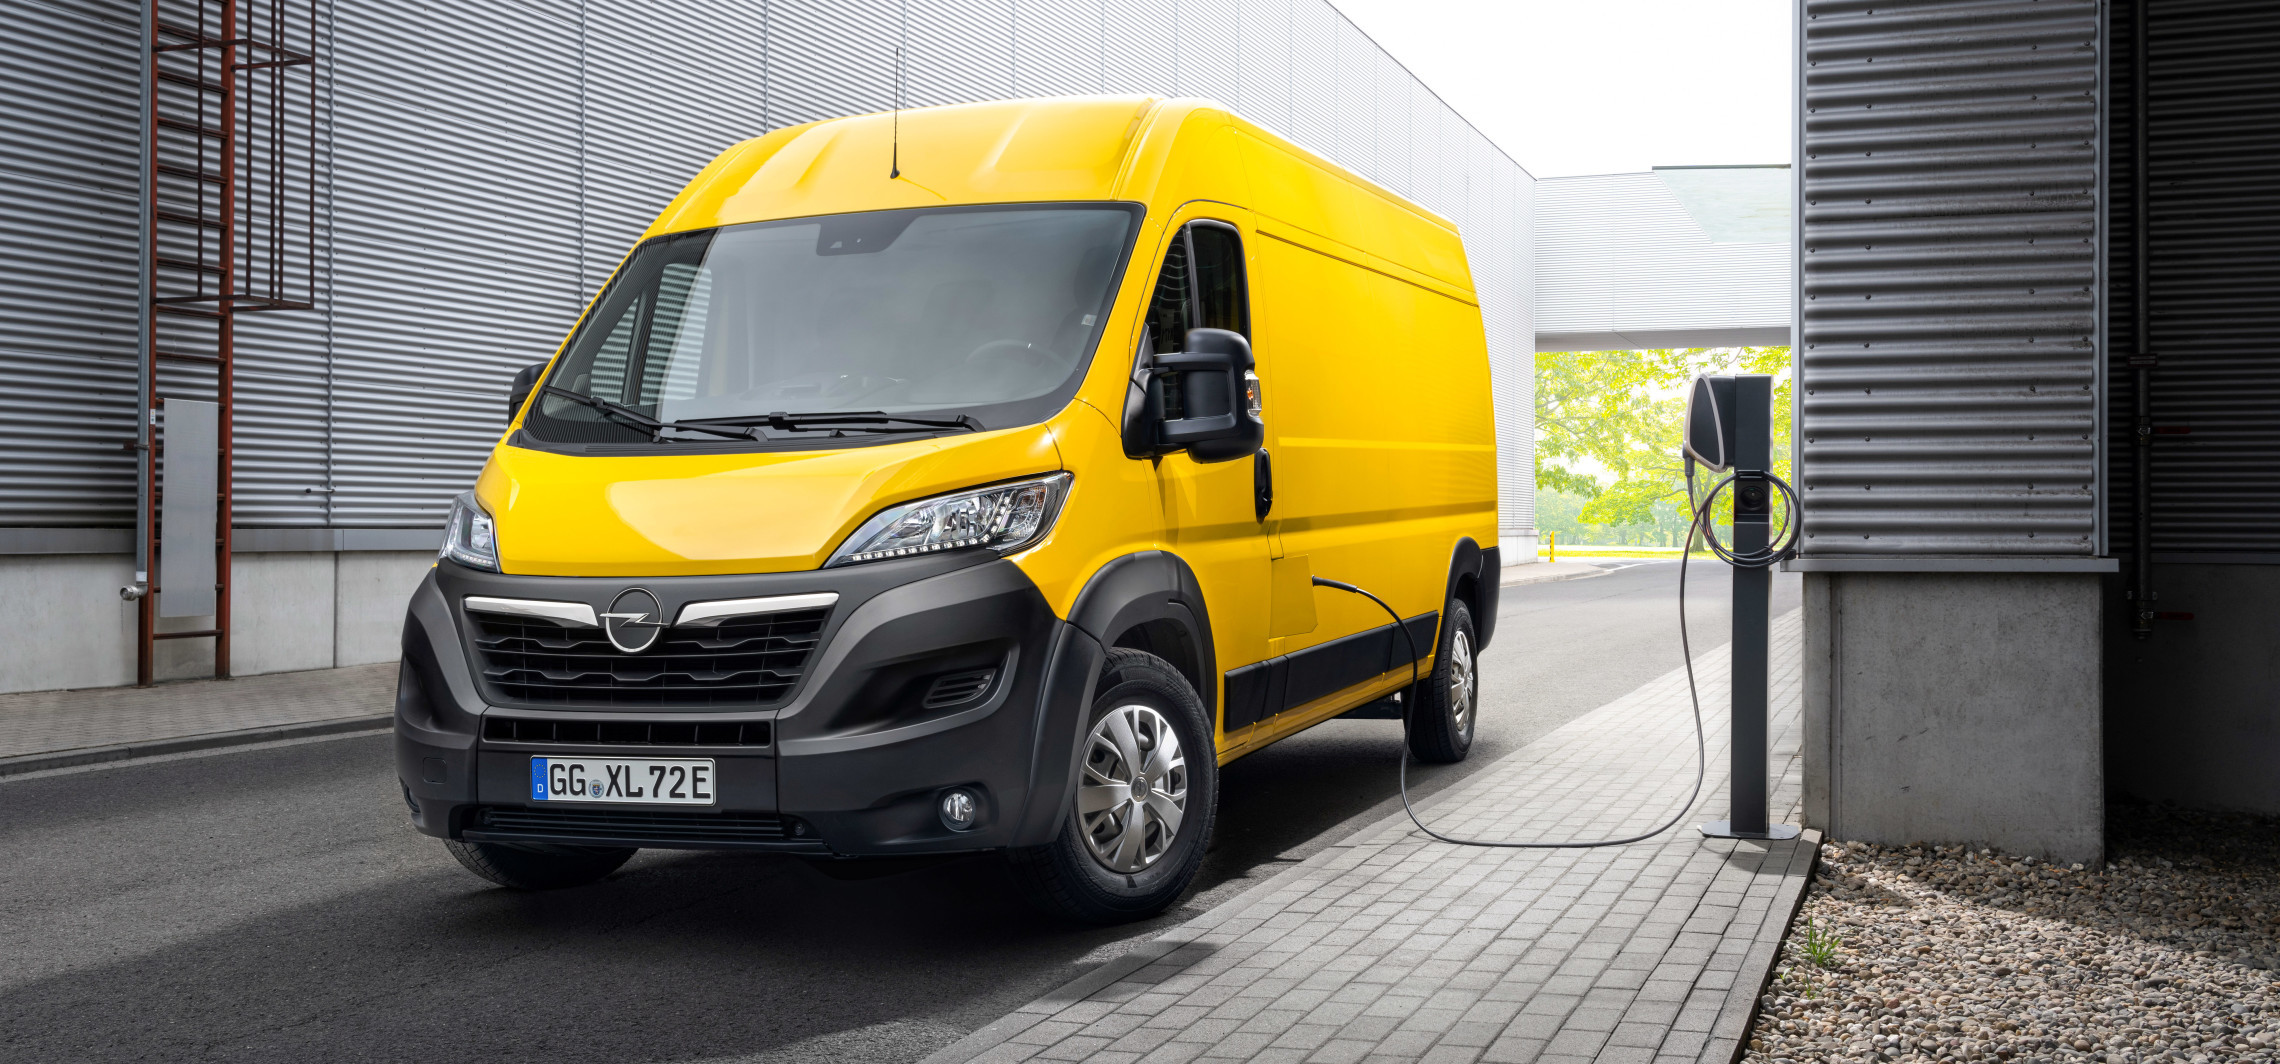 Nowy Opel Movano już dostępny na polskim rynku